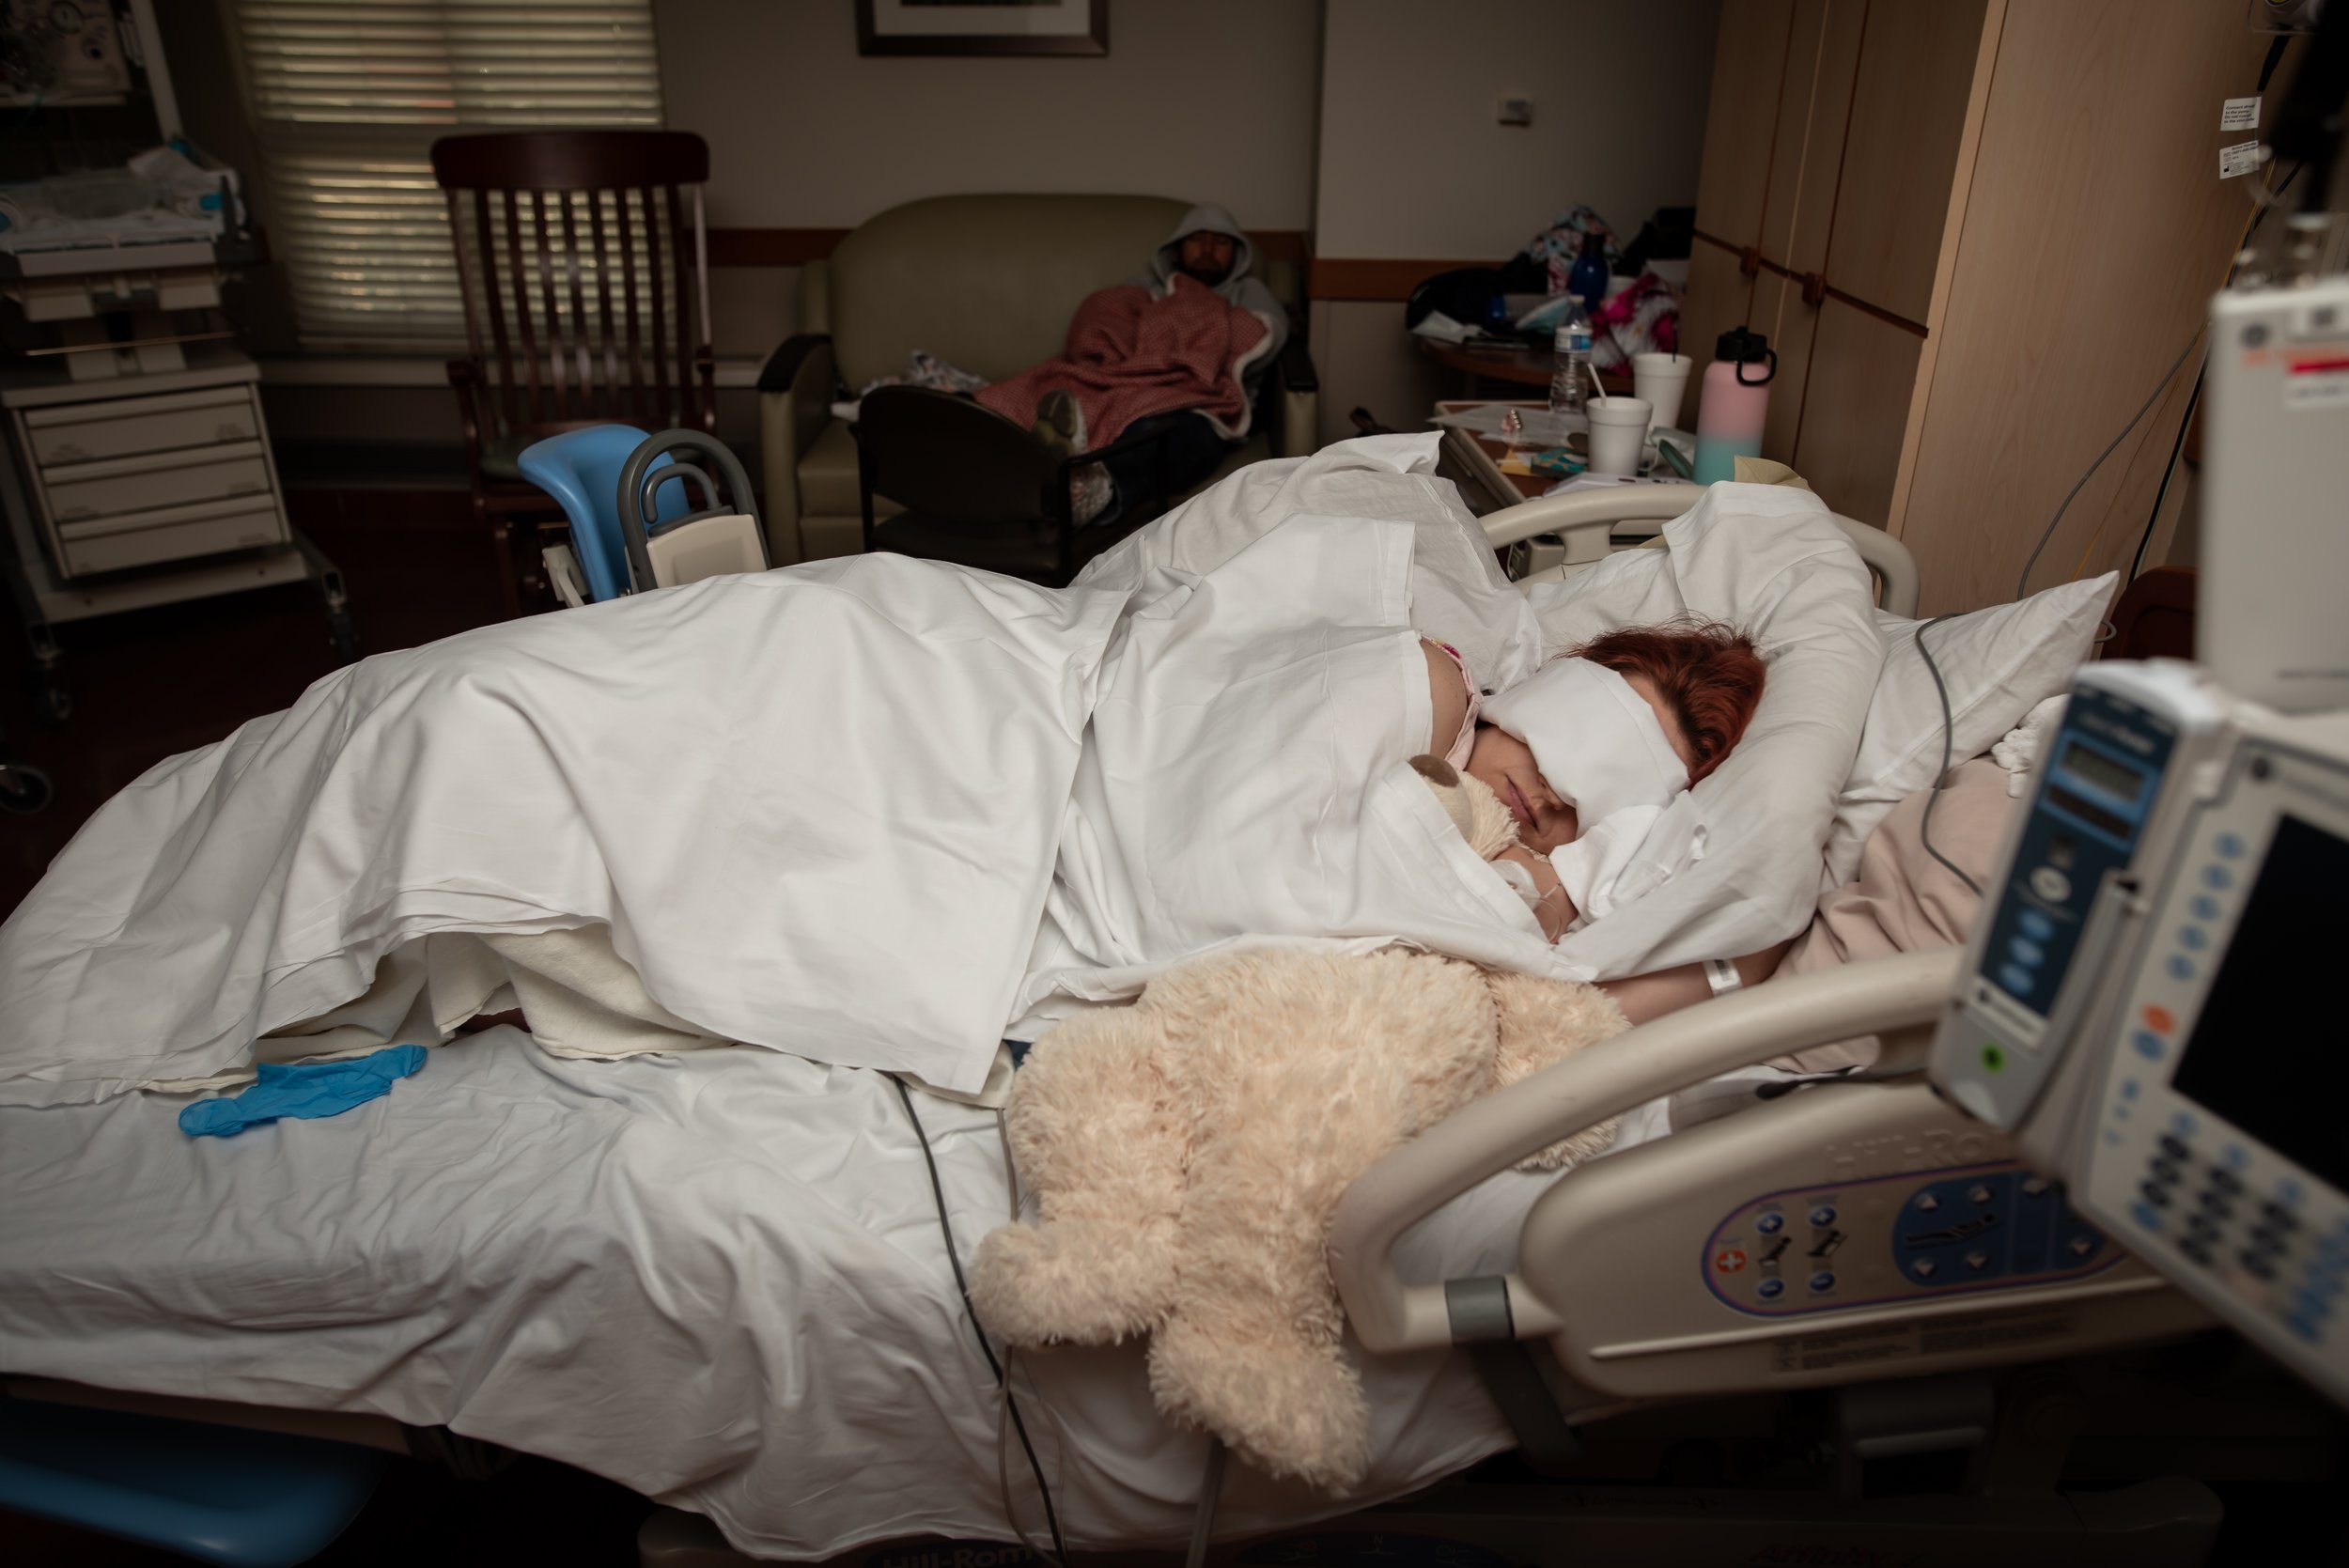 Julie Francom Birth Phorography Timpanogos Hospital VBA3C-4.jpg